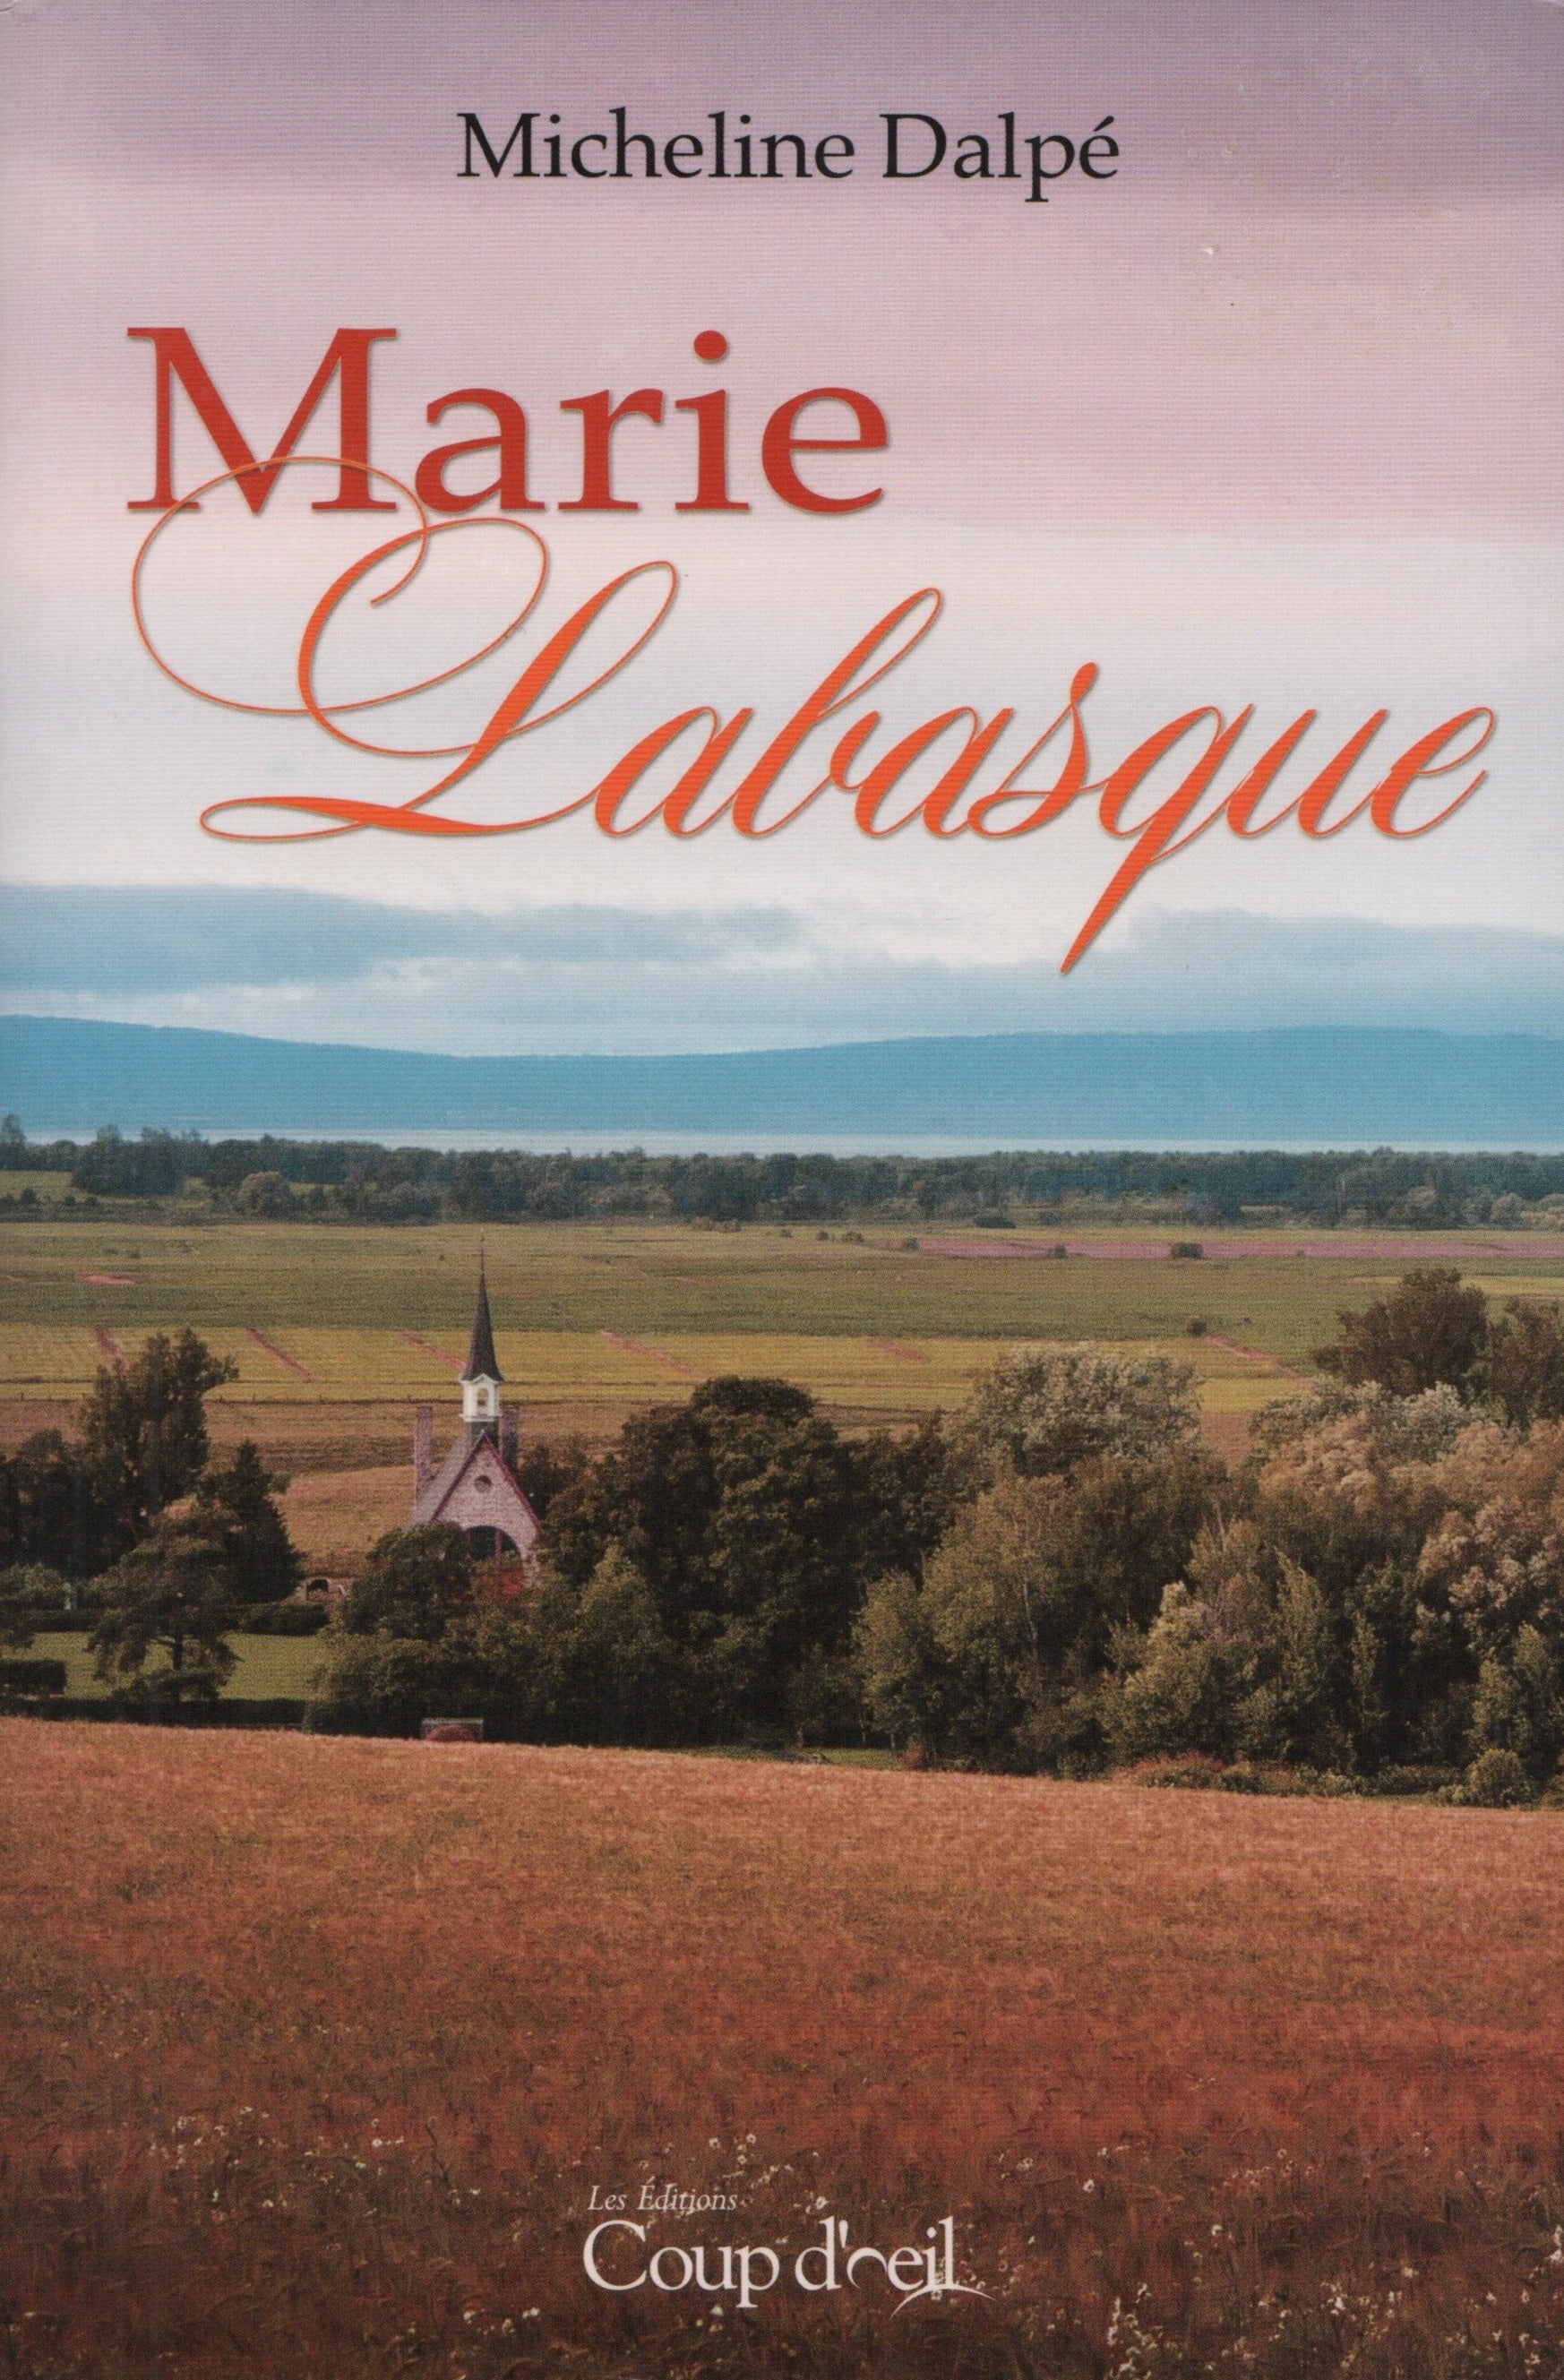 DALPE, MICHELINE. Marie Labasque